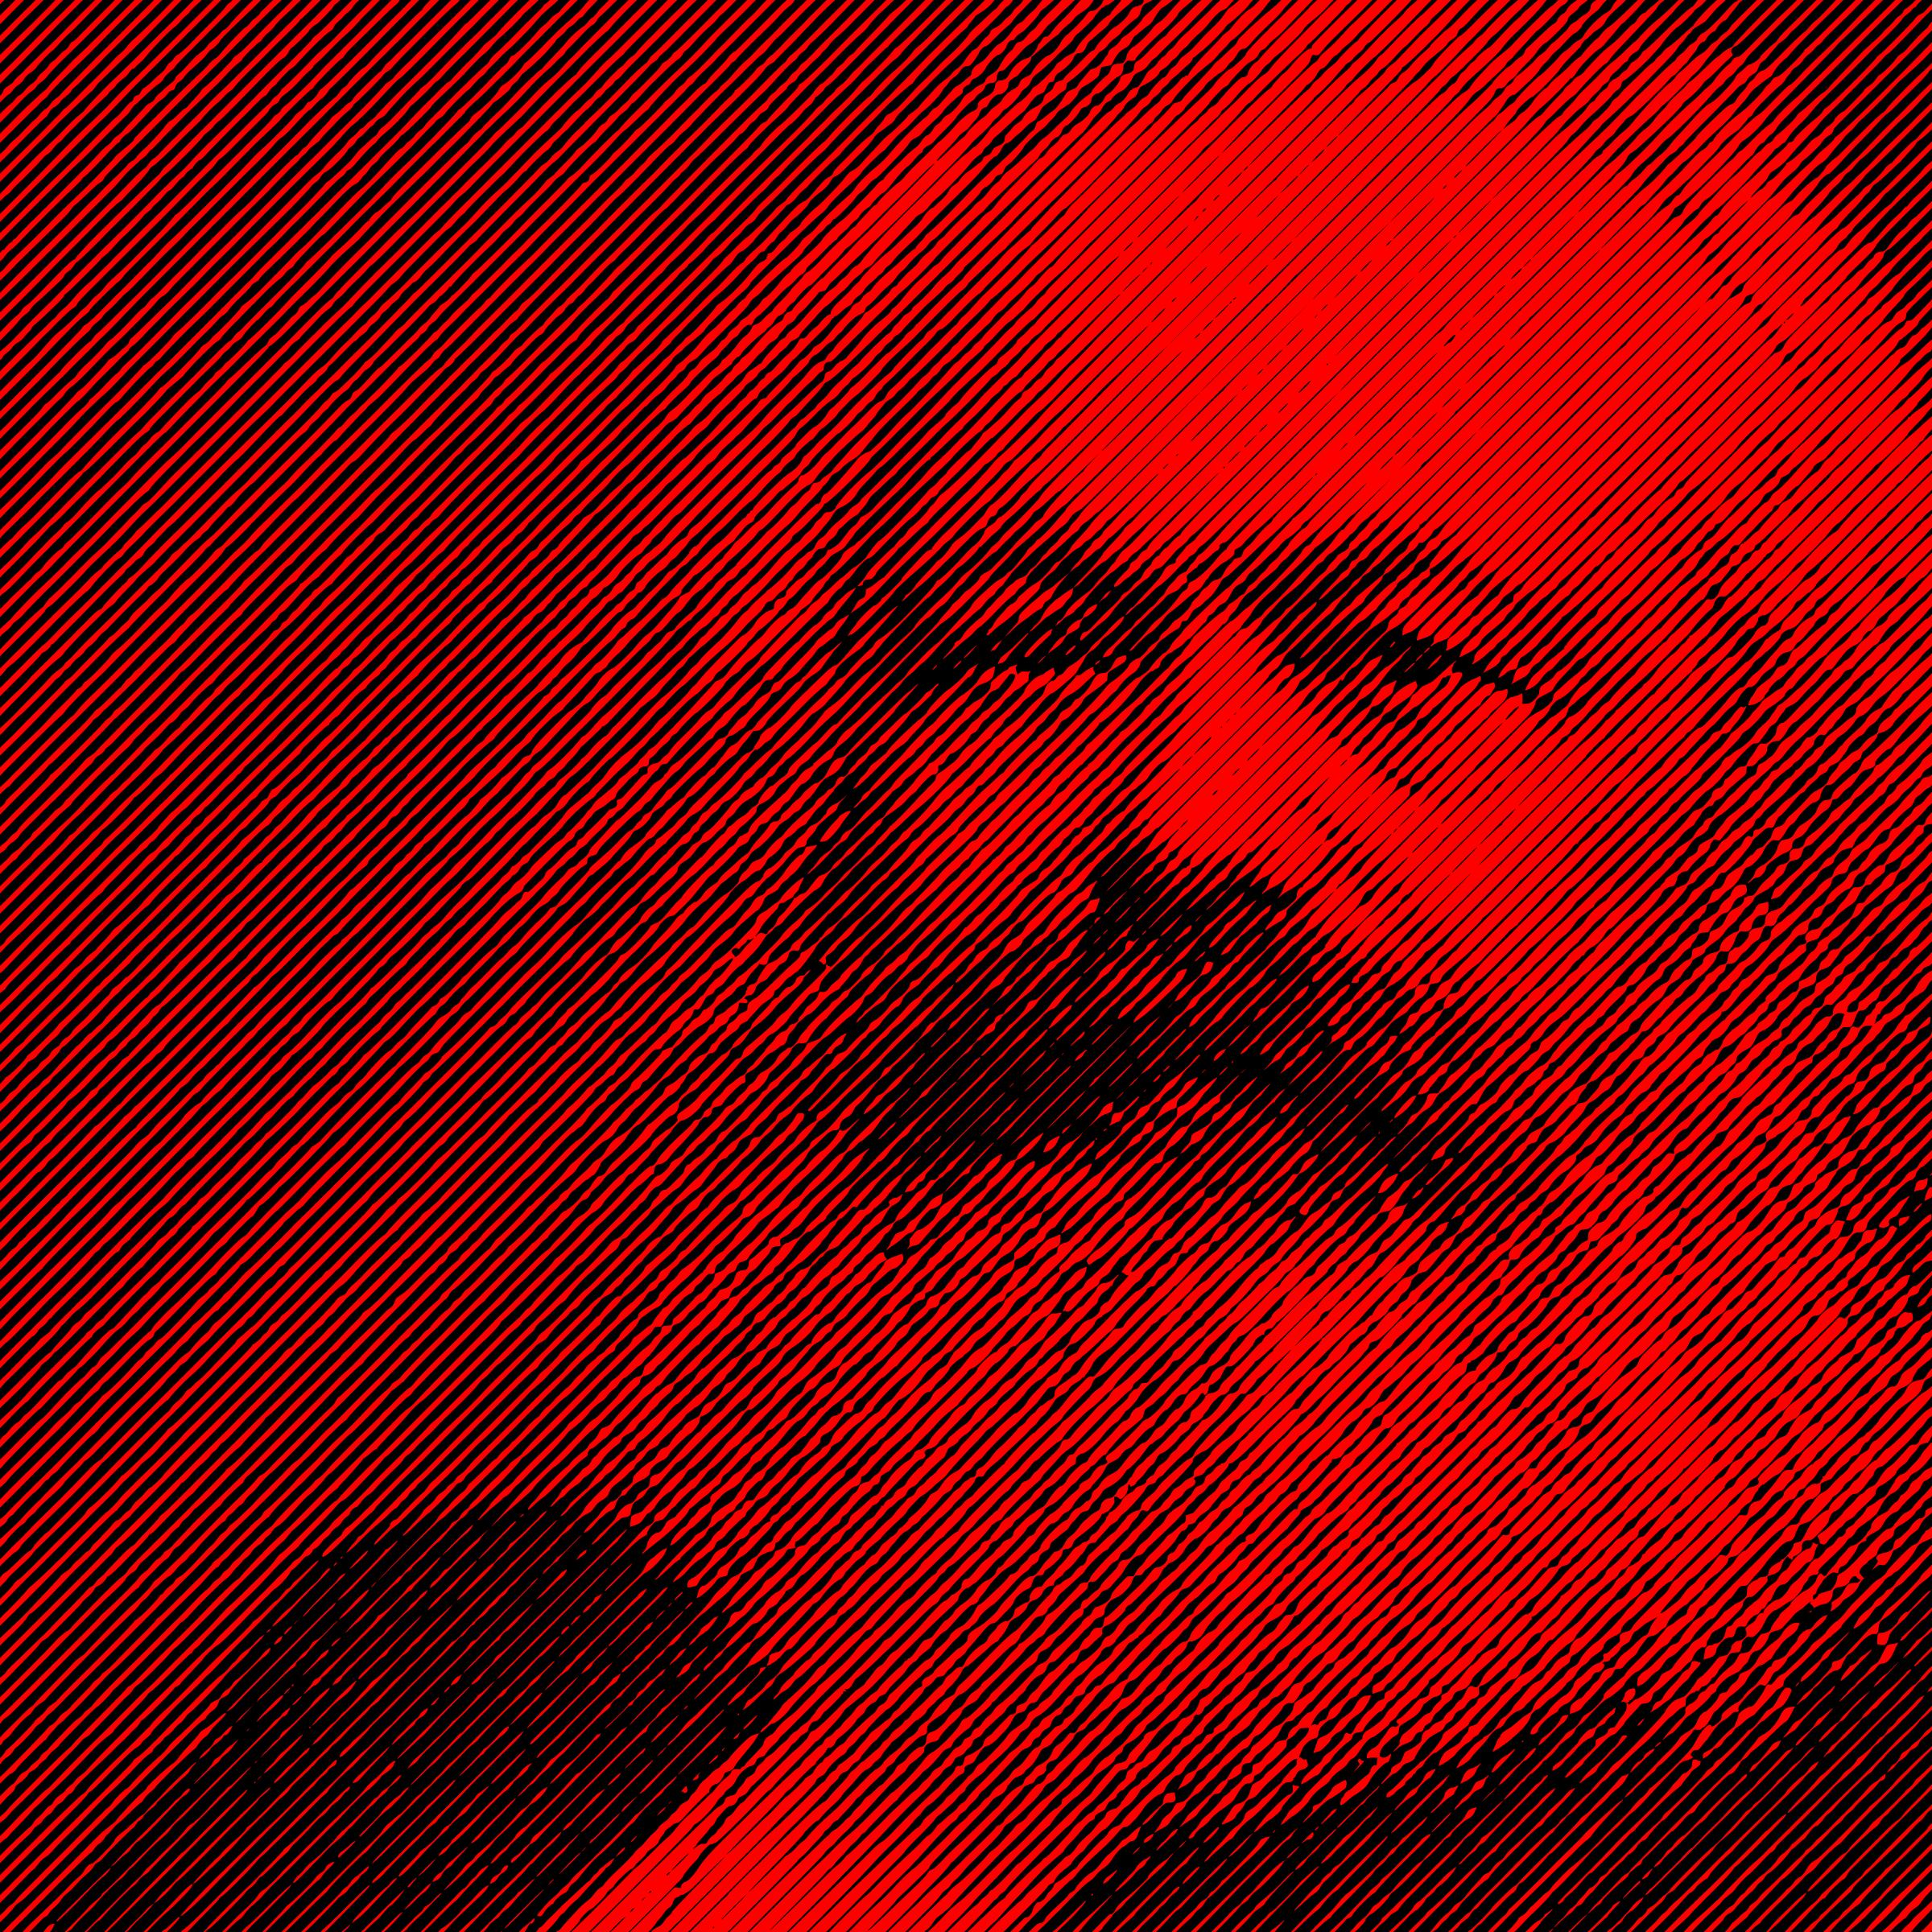 Karl Marx stripes png